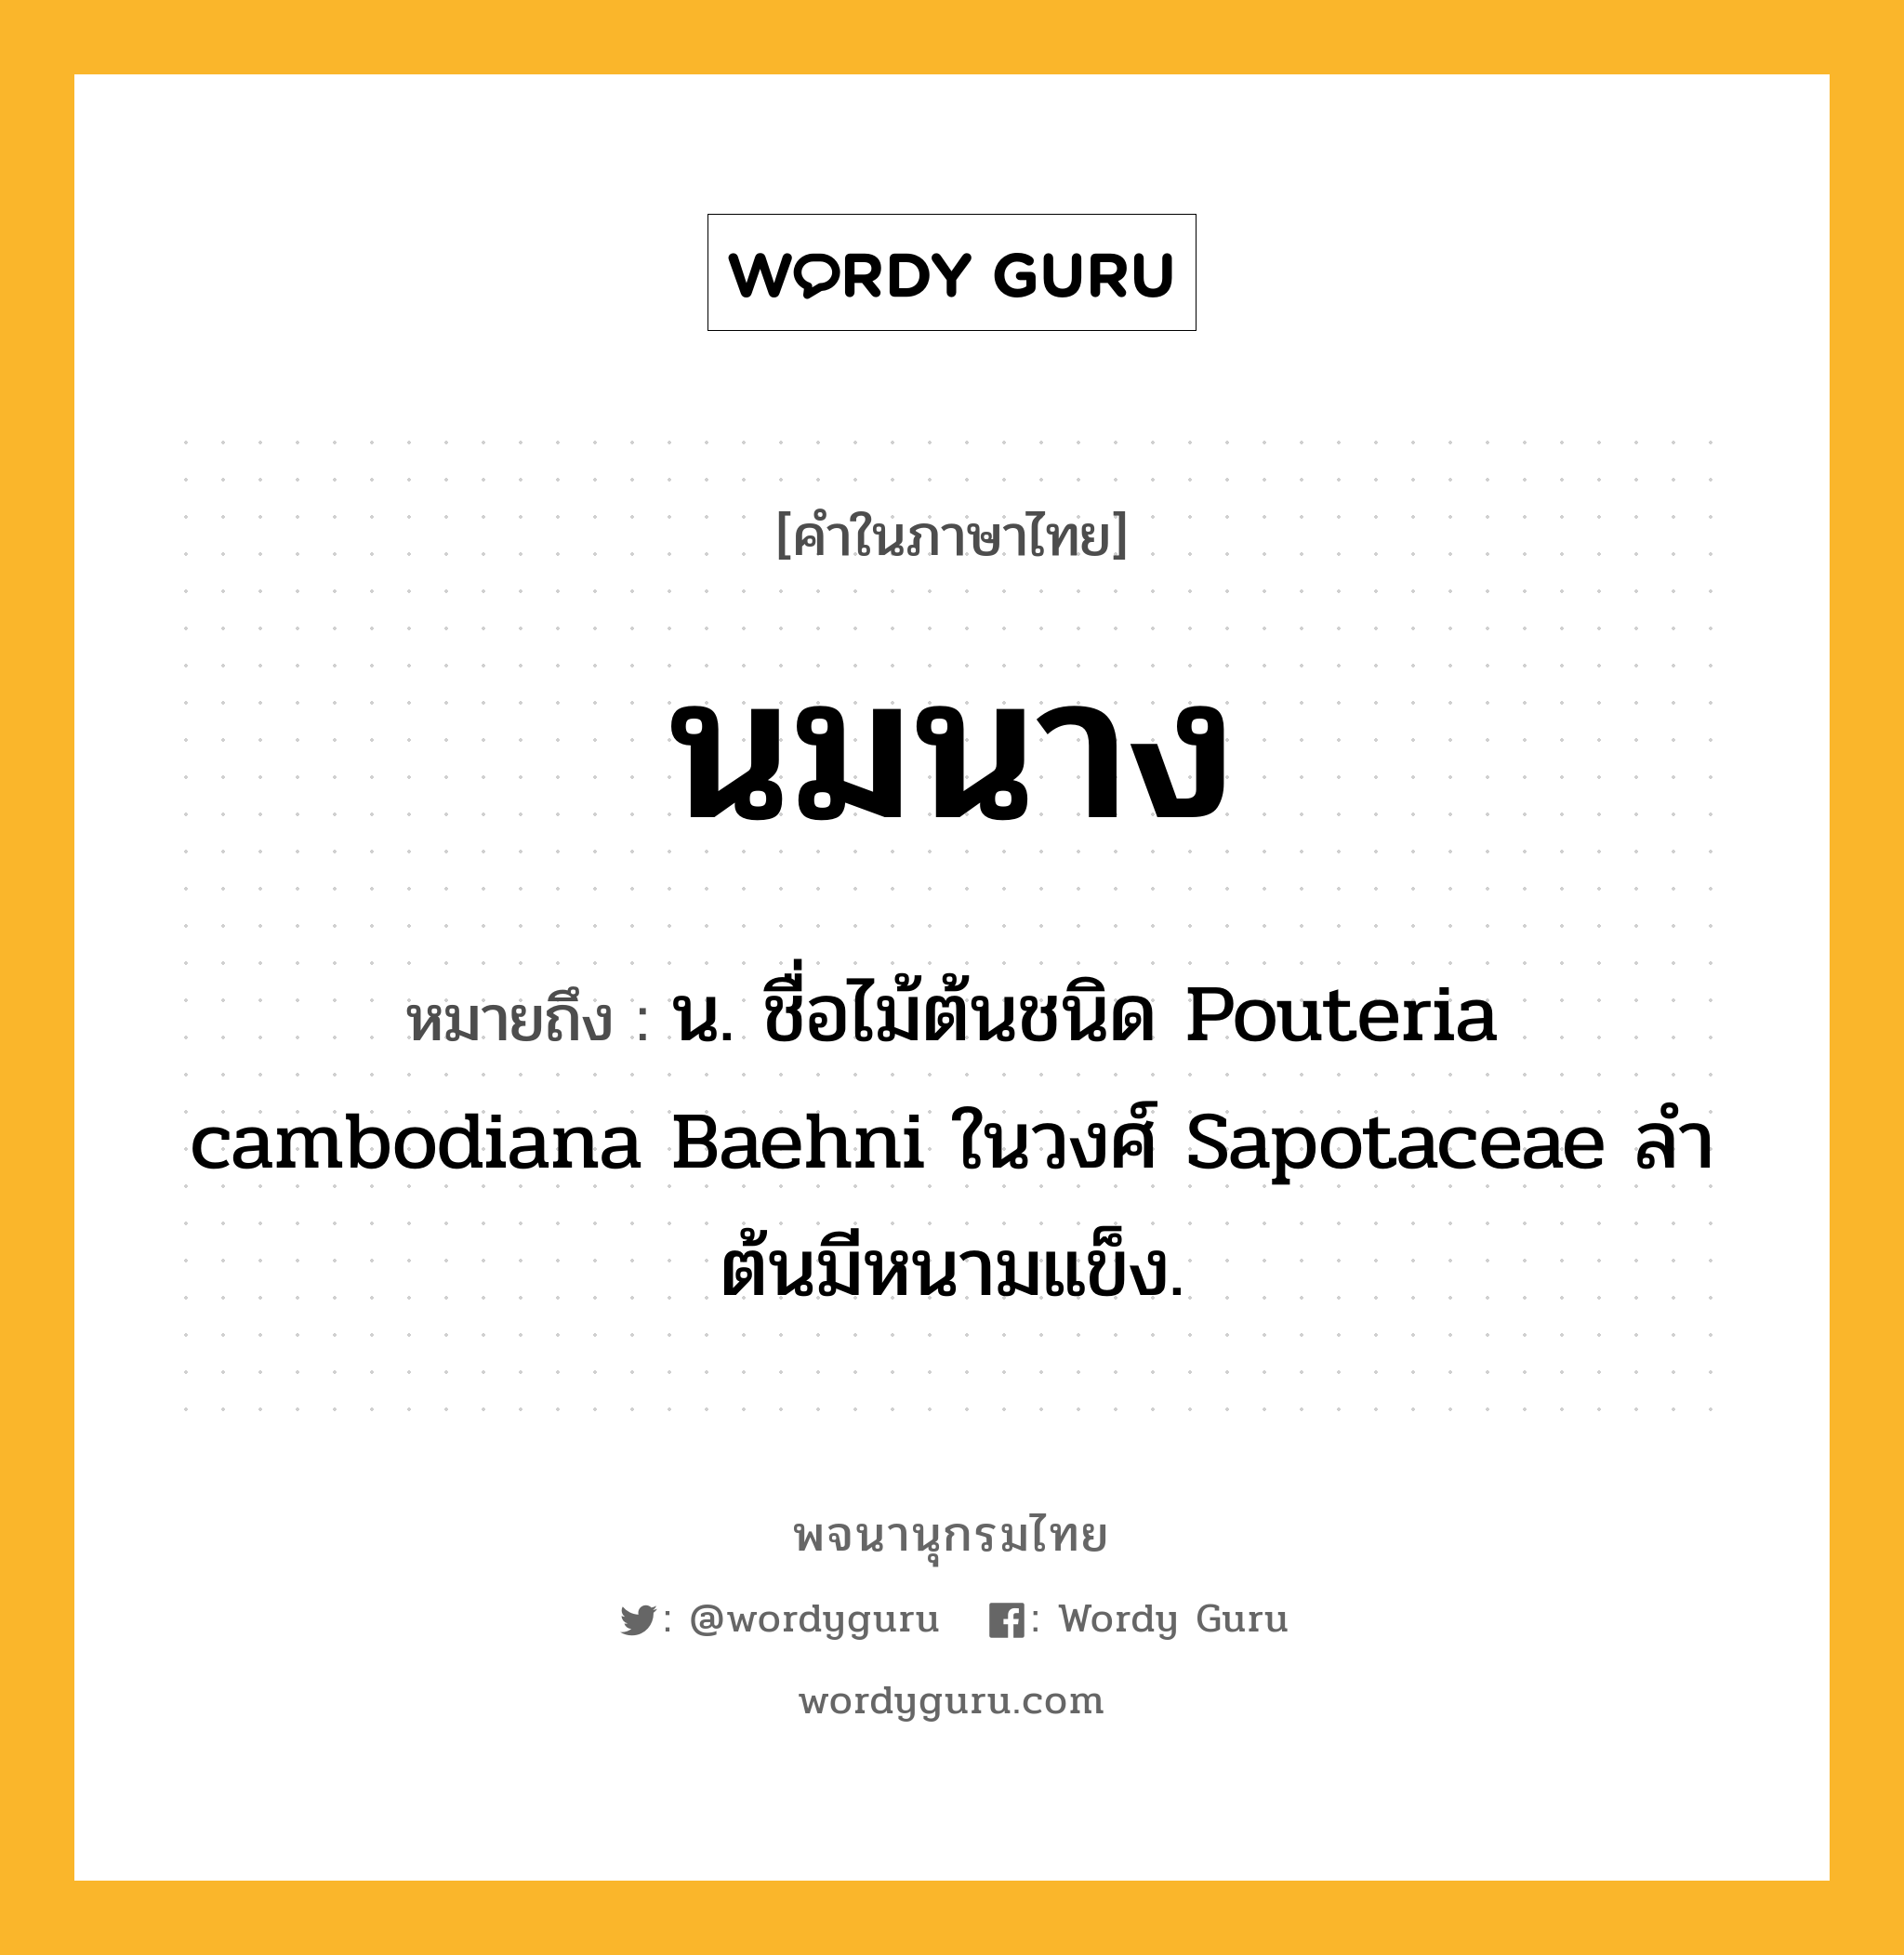 นมนาง ความหมาย หมายถึงอะไร?, คำในภาษาไทย นมนาง หมายถึง น. ชื่อไม้ต้นชนิด Pouteria cambodiana Baehni ในวงศ์ Sapotaceae ลําต้นมีหนามแข็ง.